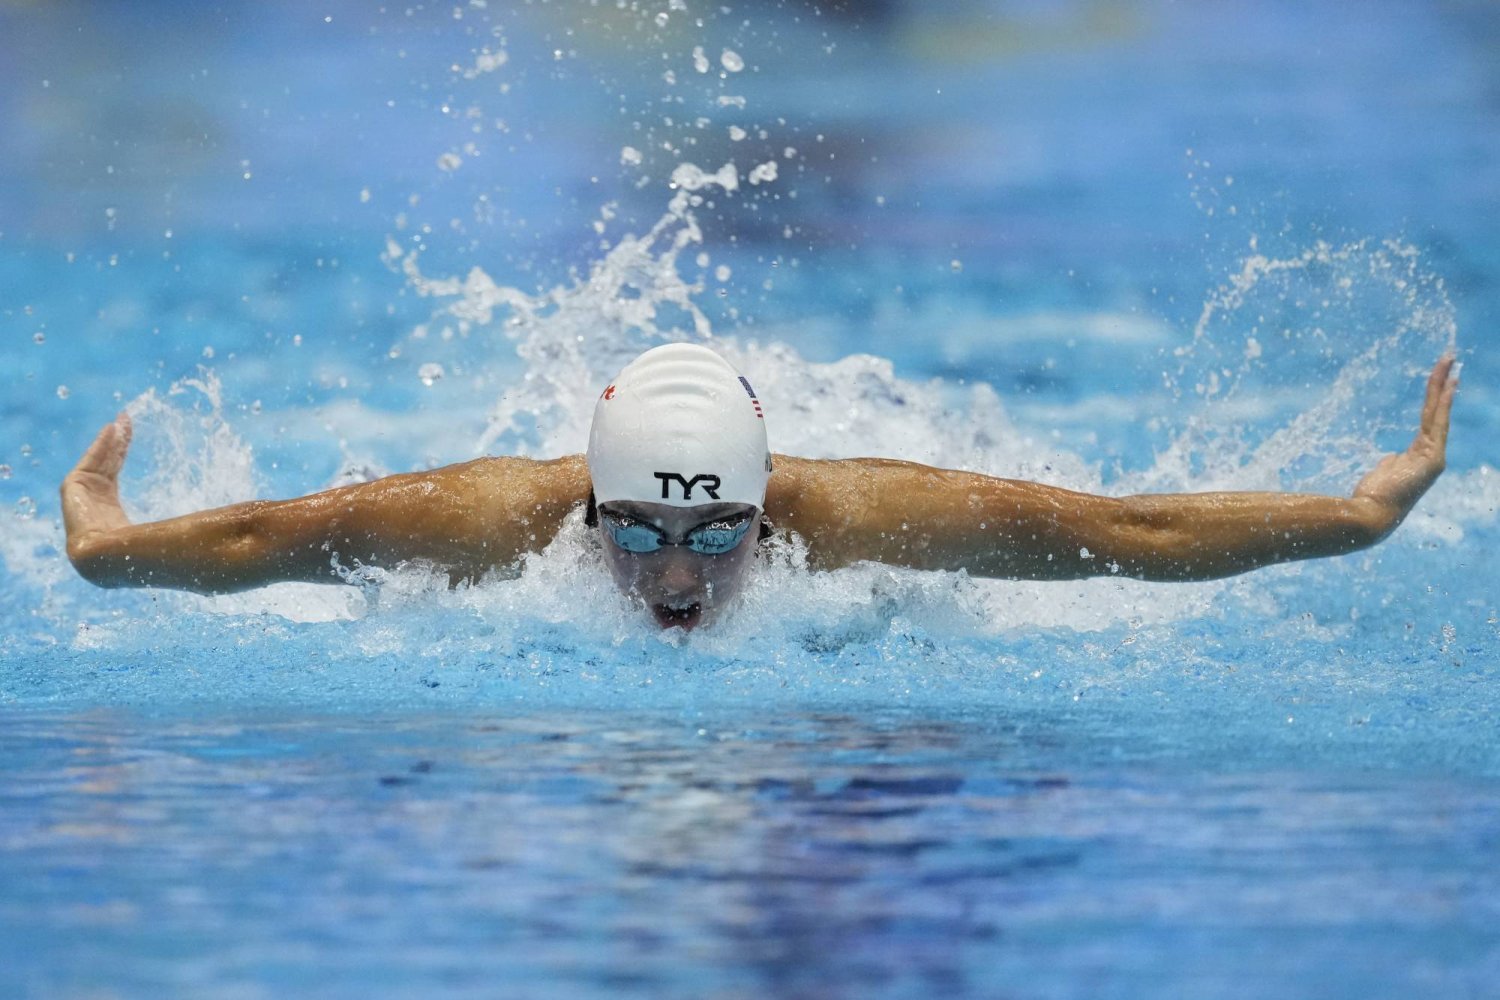 كليربورت يأمل أن تتركز الأضواء بالأولمبياد على المنافسات داخل حوض السباحة (أ.ب)